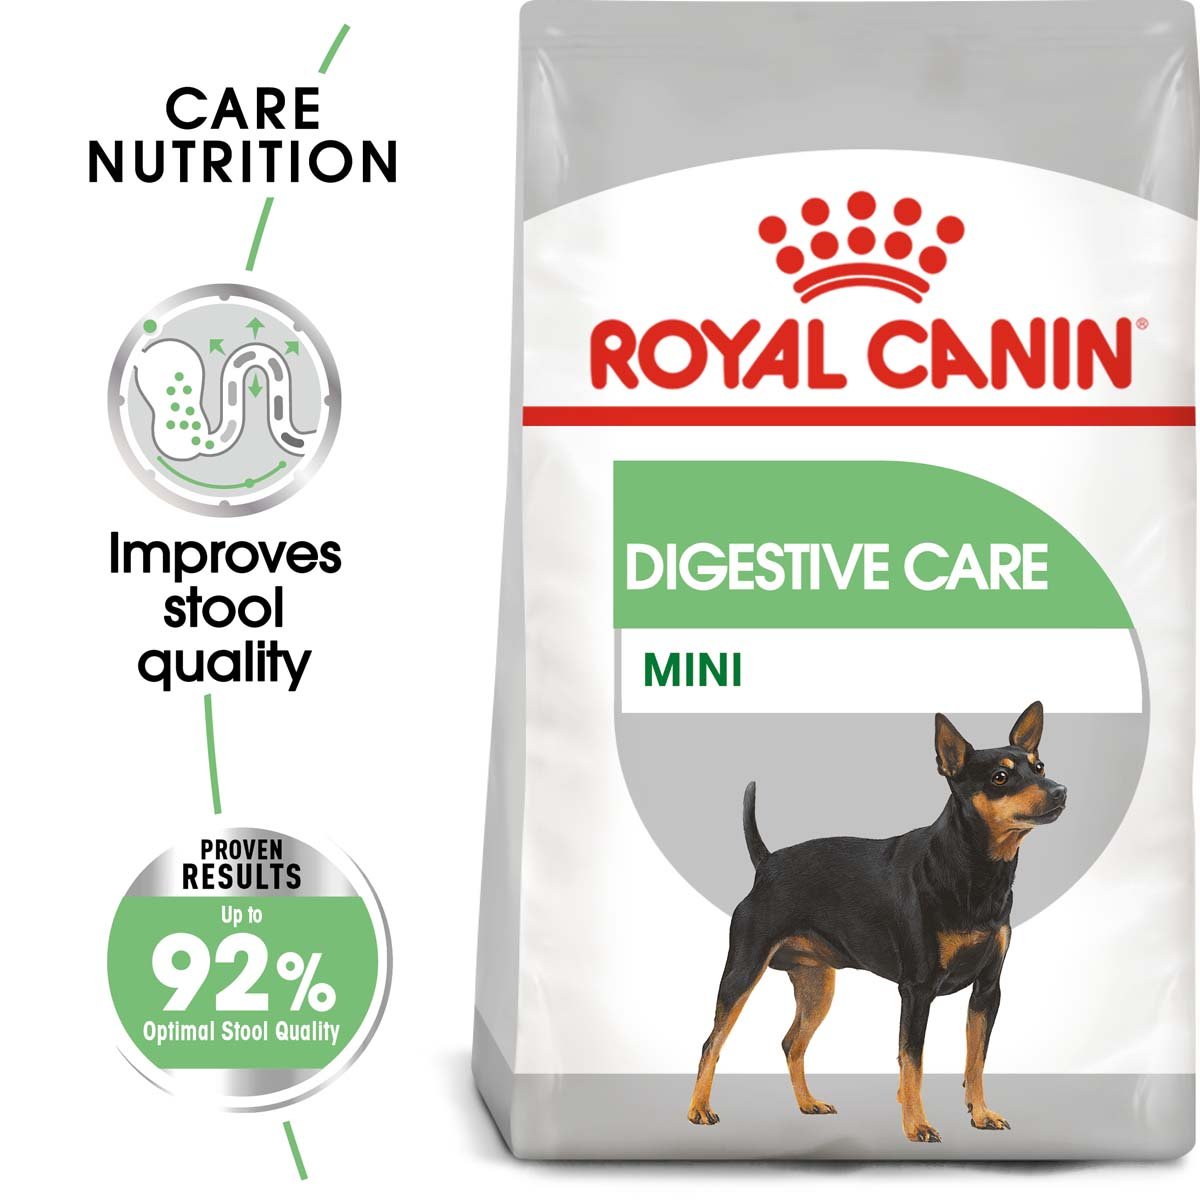 ROYAL CANIN DIGESTIVE CARE MINI Trockenfutter für kleine Hunde mit empfindlicher Verdauung 3kg von Royal Canin